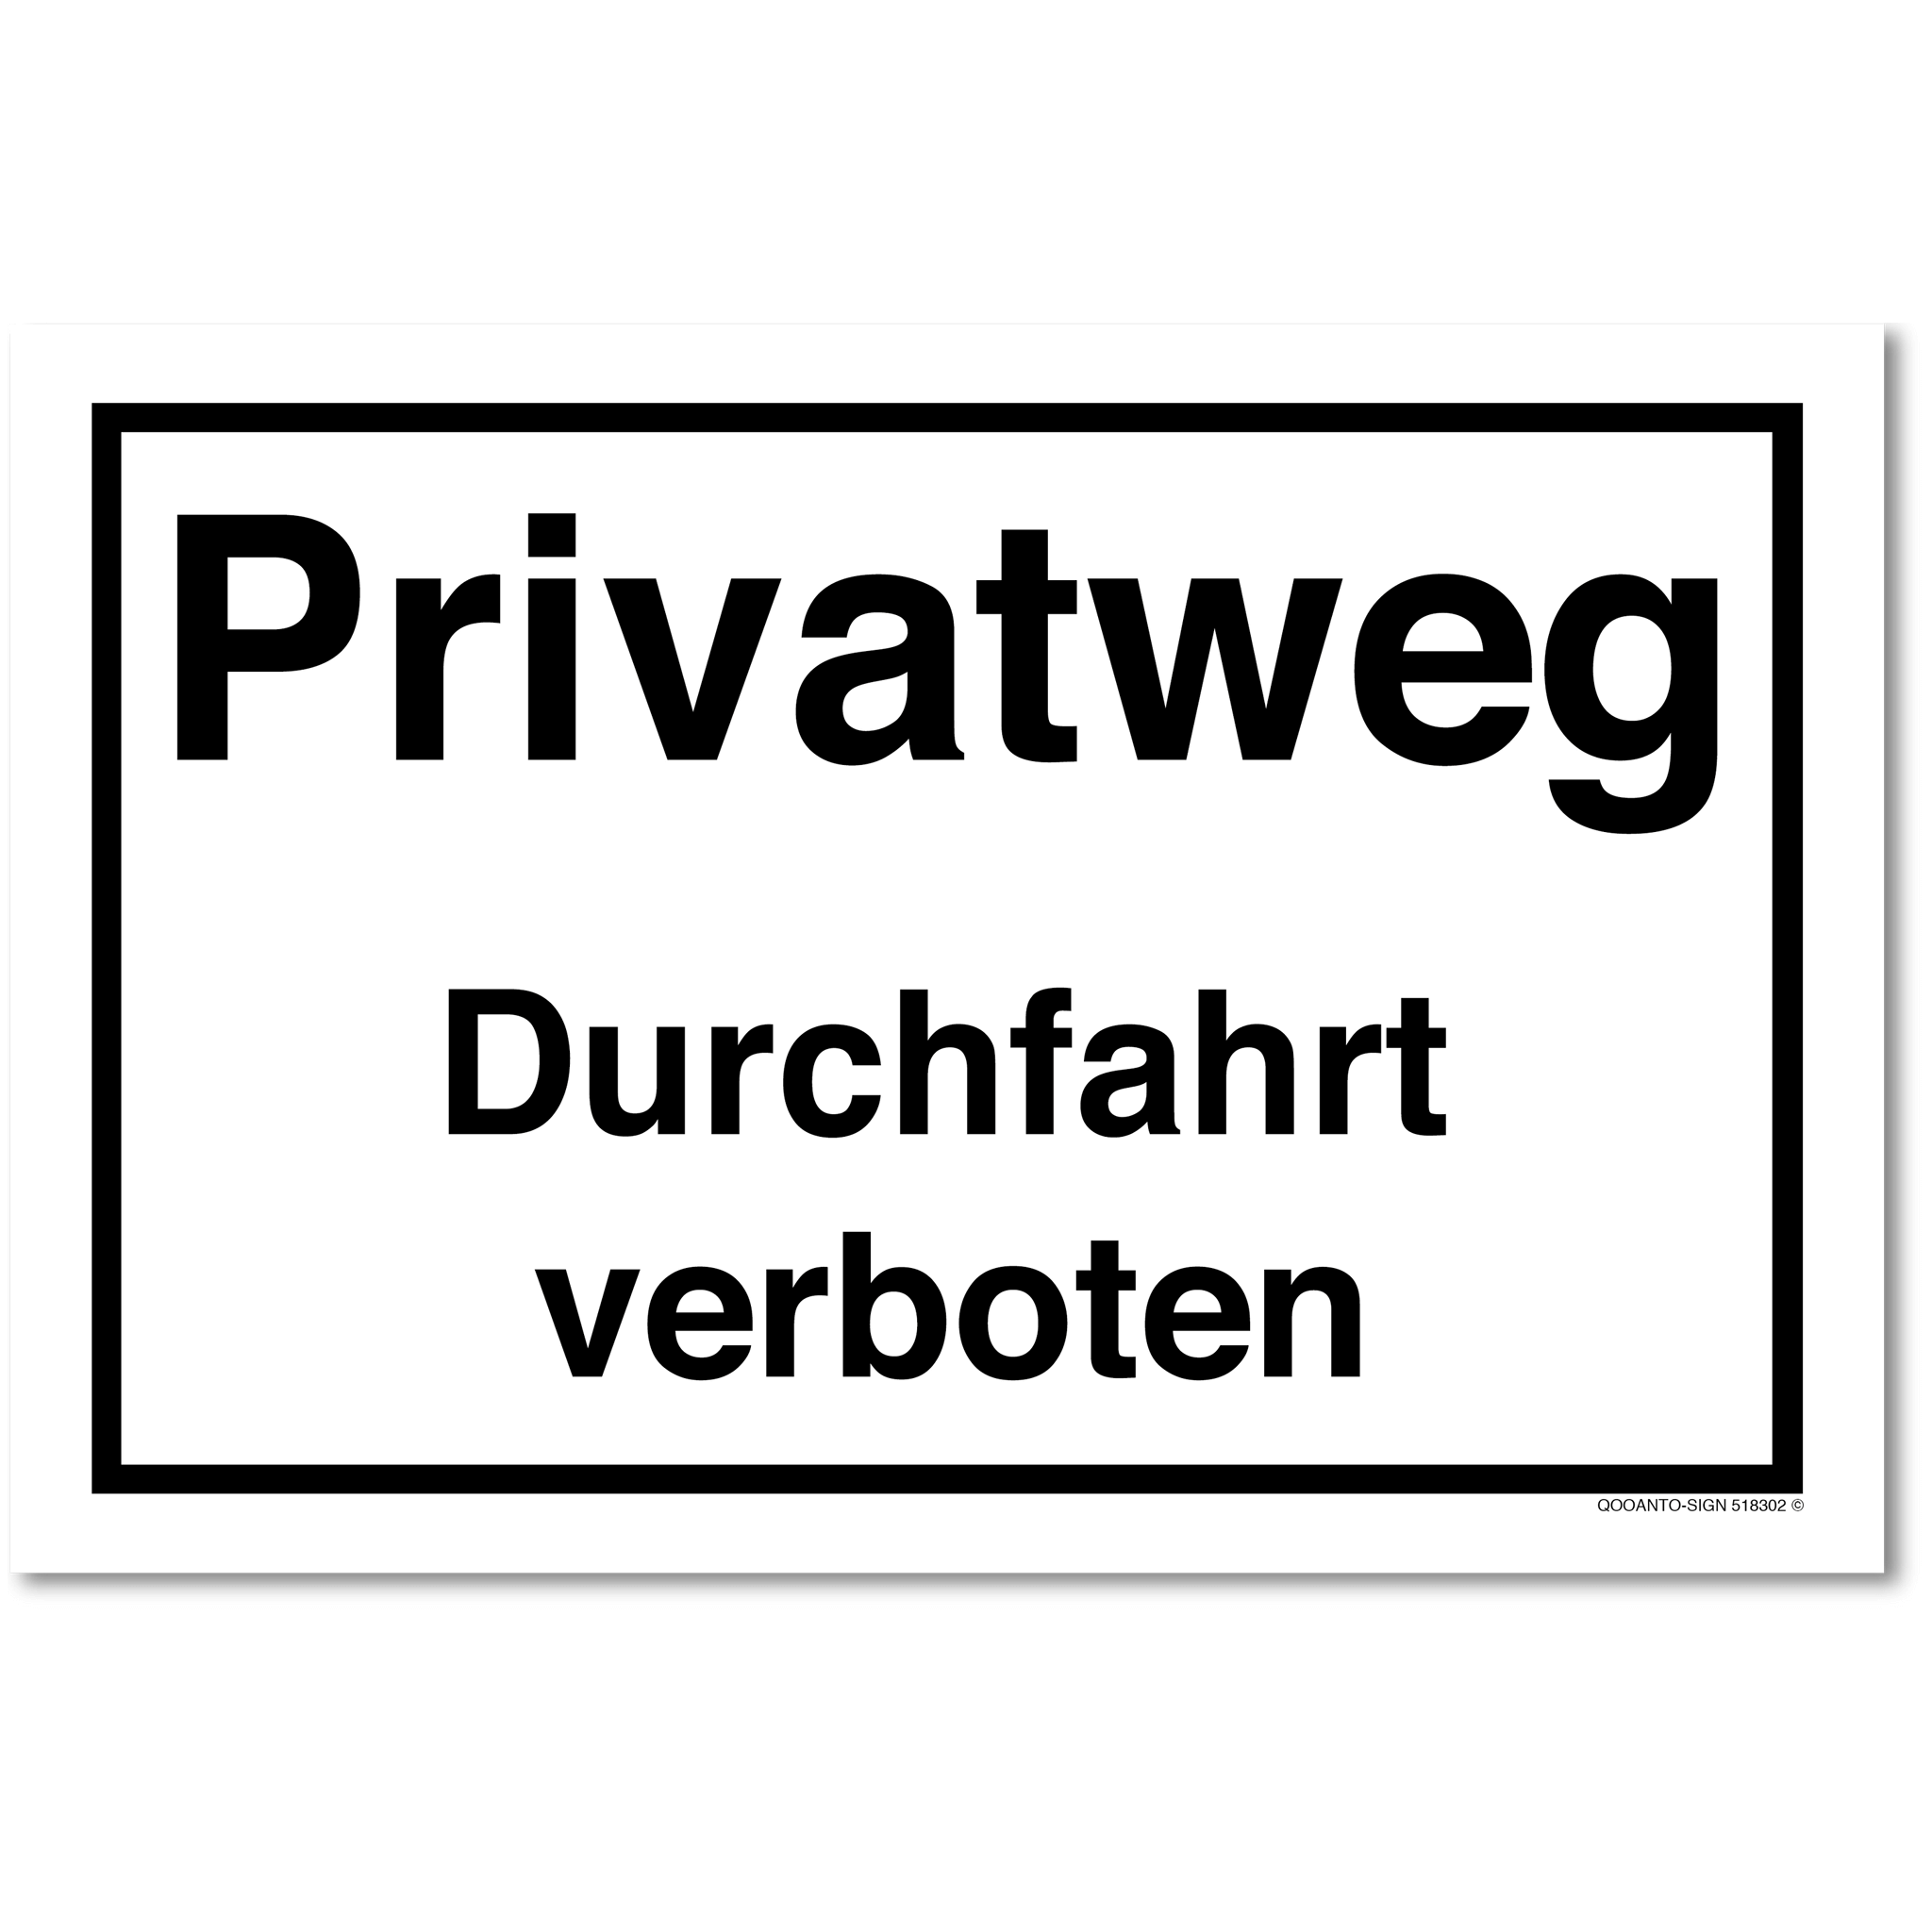 Privatweg Durchfahrt verboten, weiss, Schild oder Aufkleber